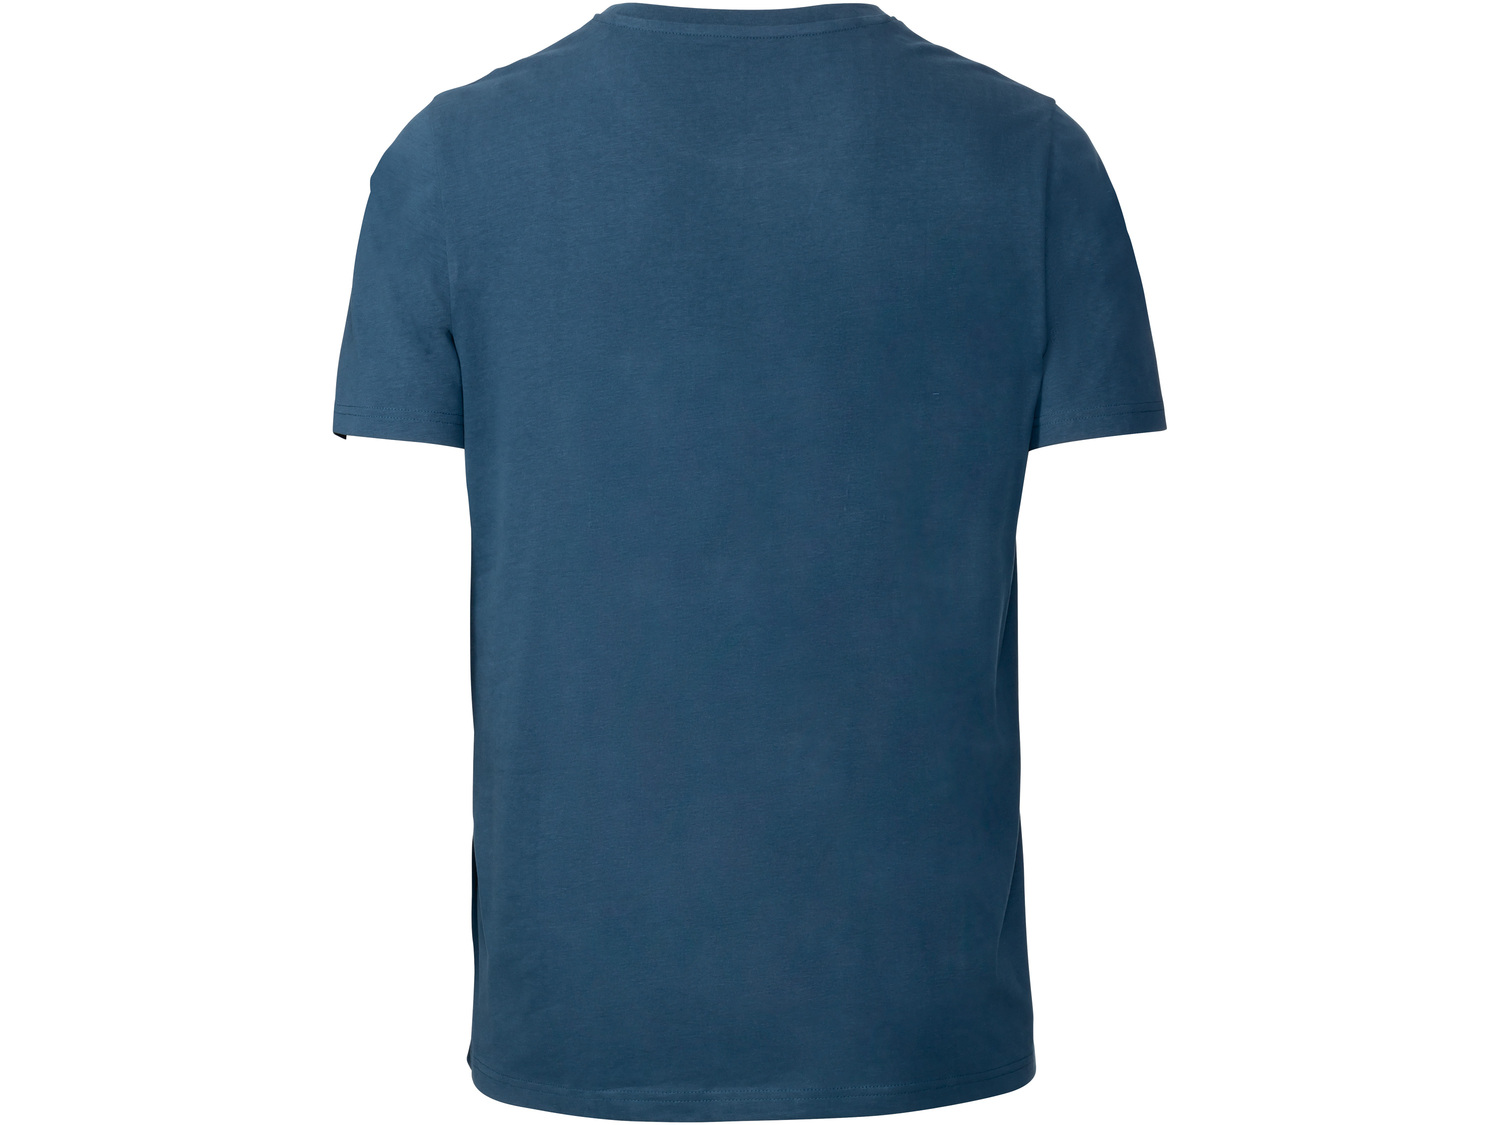 T-shirt męski Livergy, cena 19,99 PLN 
- 100% bawełny
- rozmiary: M-XL
Opis

- ...